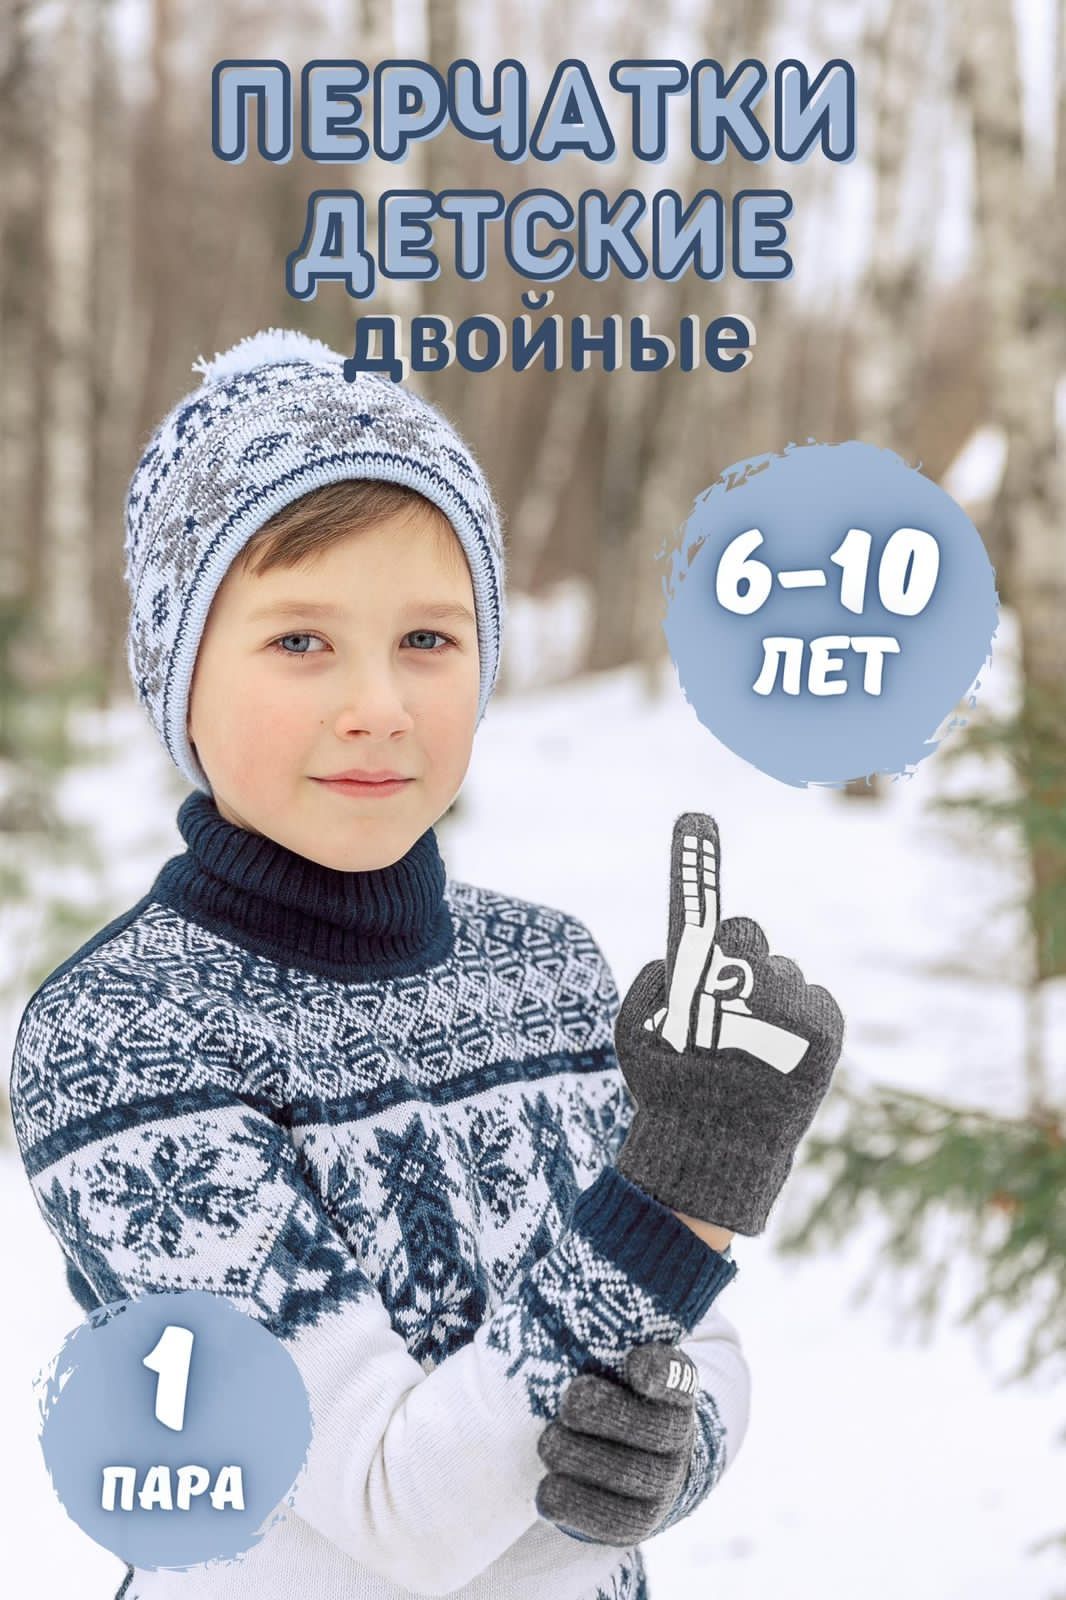 Детские зимние перчатки для рыбалки - непромокаемая защита рук